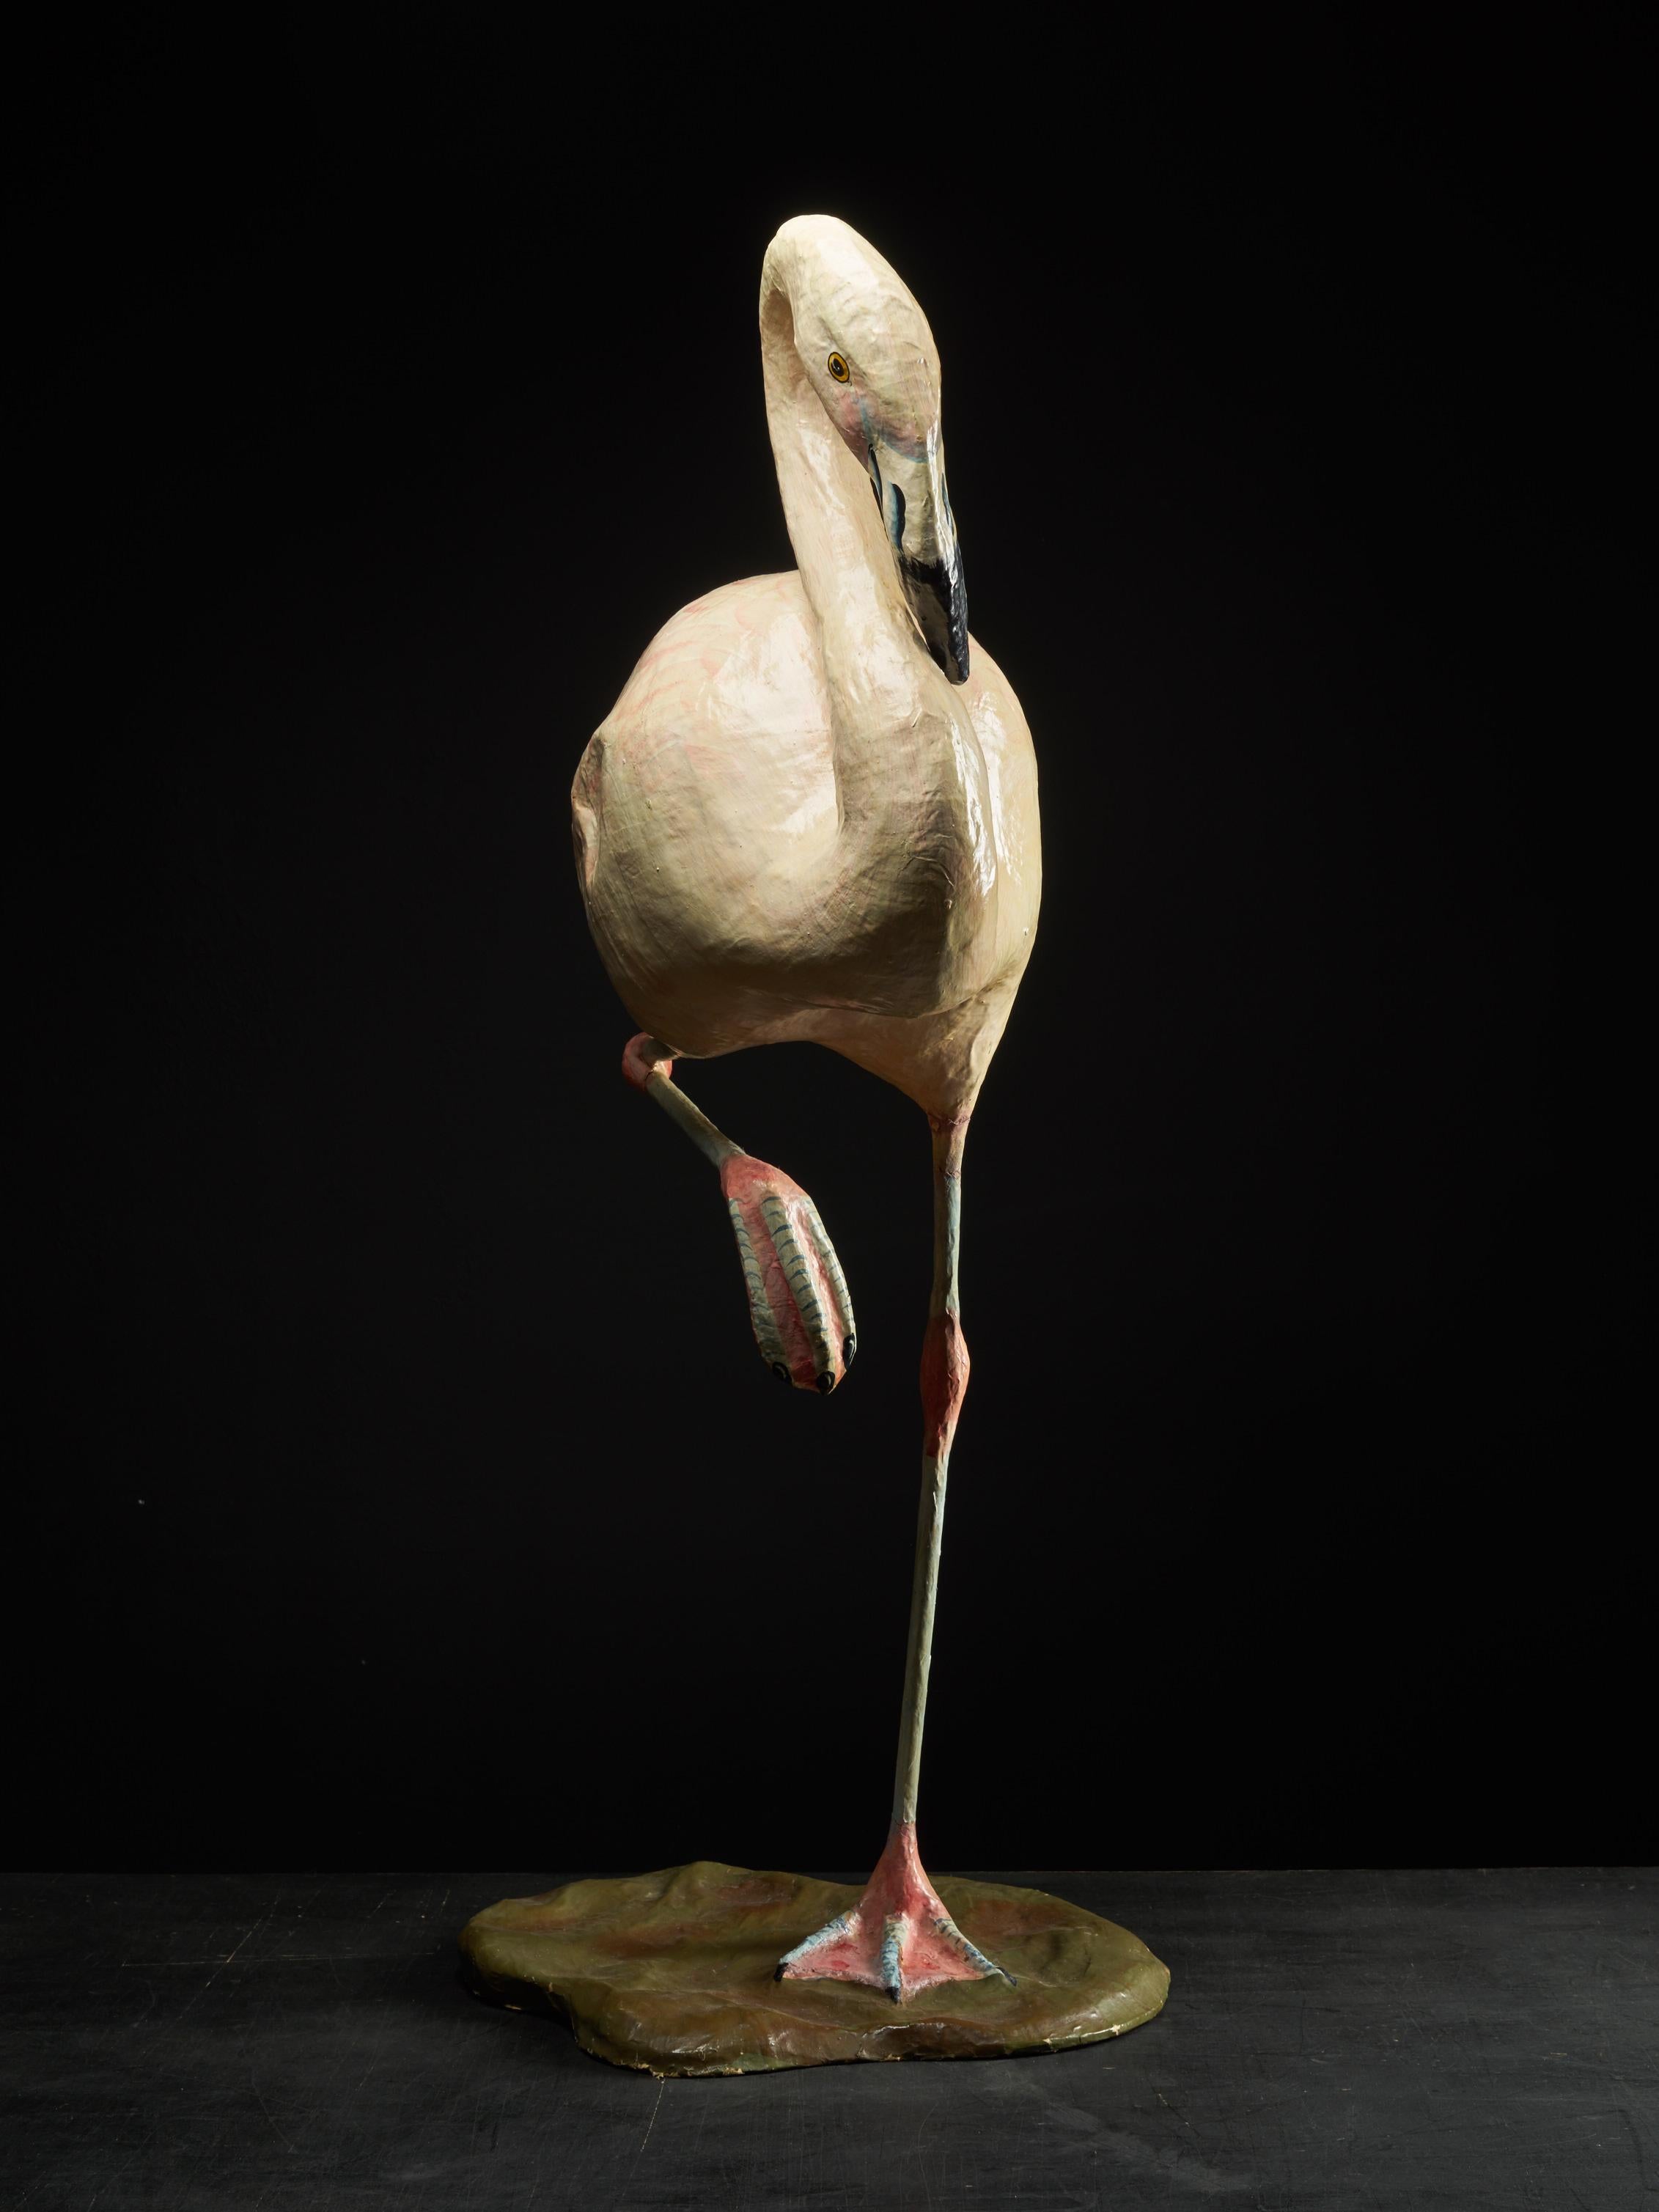 Dieser handgefertigte Flamingo aus Pappmaché hat seine ursprünglichen Farben. Er ist etwa einen Meter hoch und steht auf einem Bein. Der Flamingo stammt aus der Mitte des 20. Jahrhunderts.